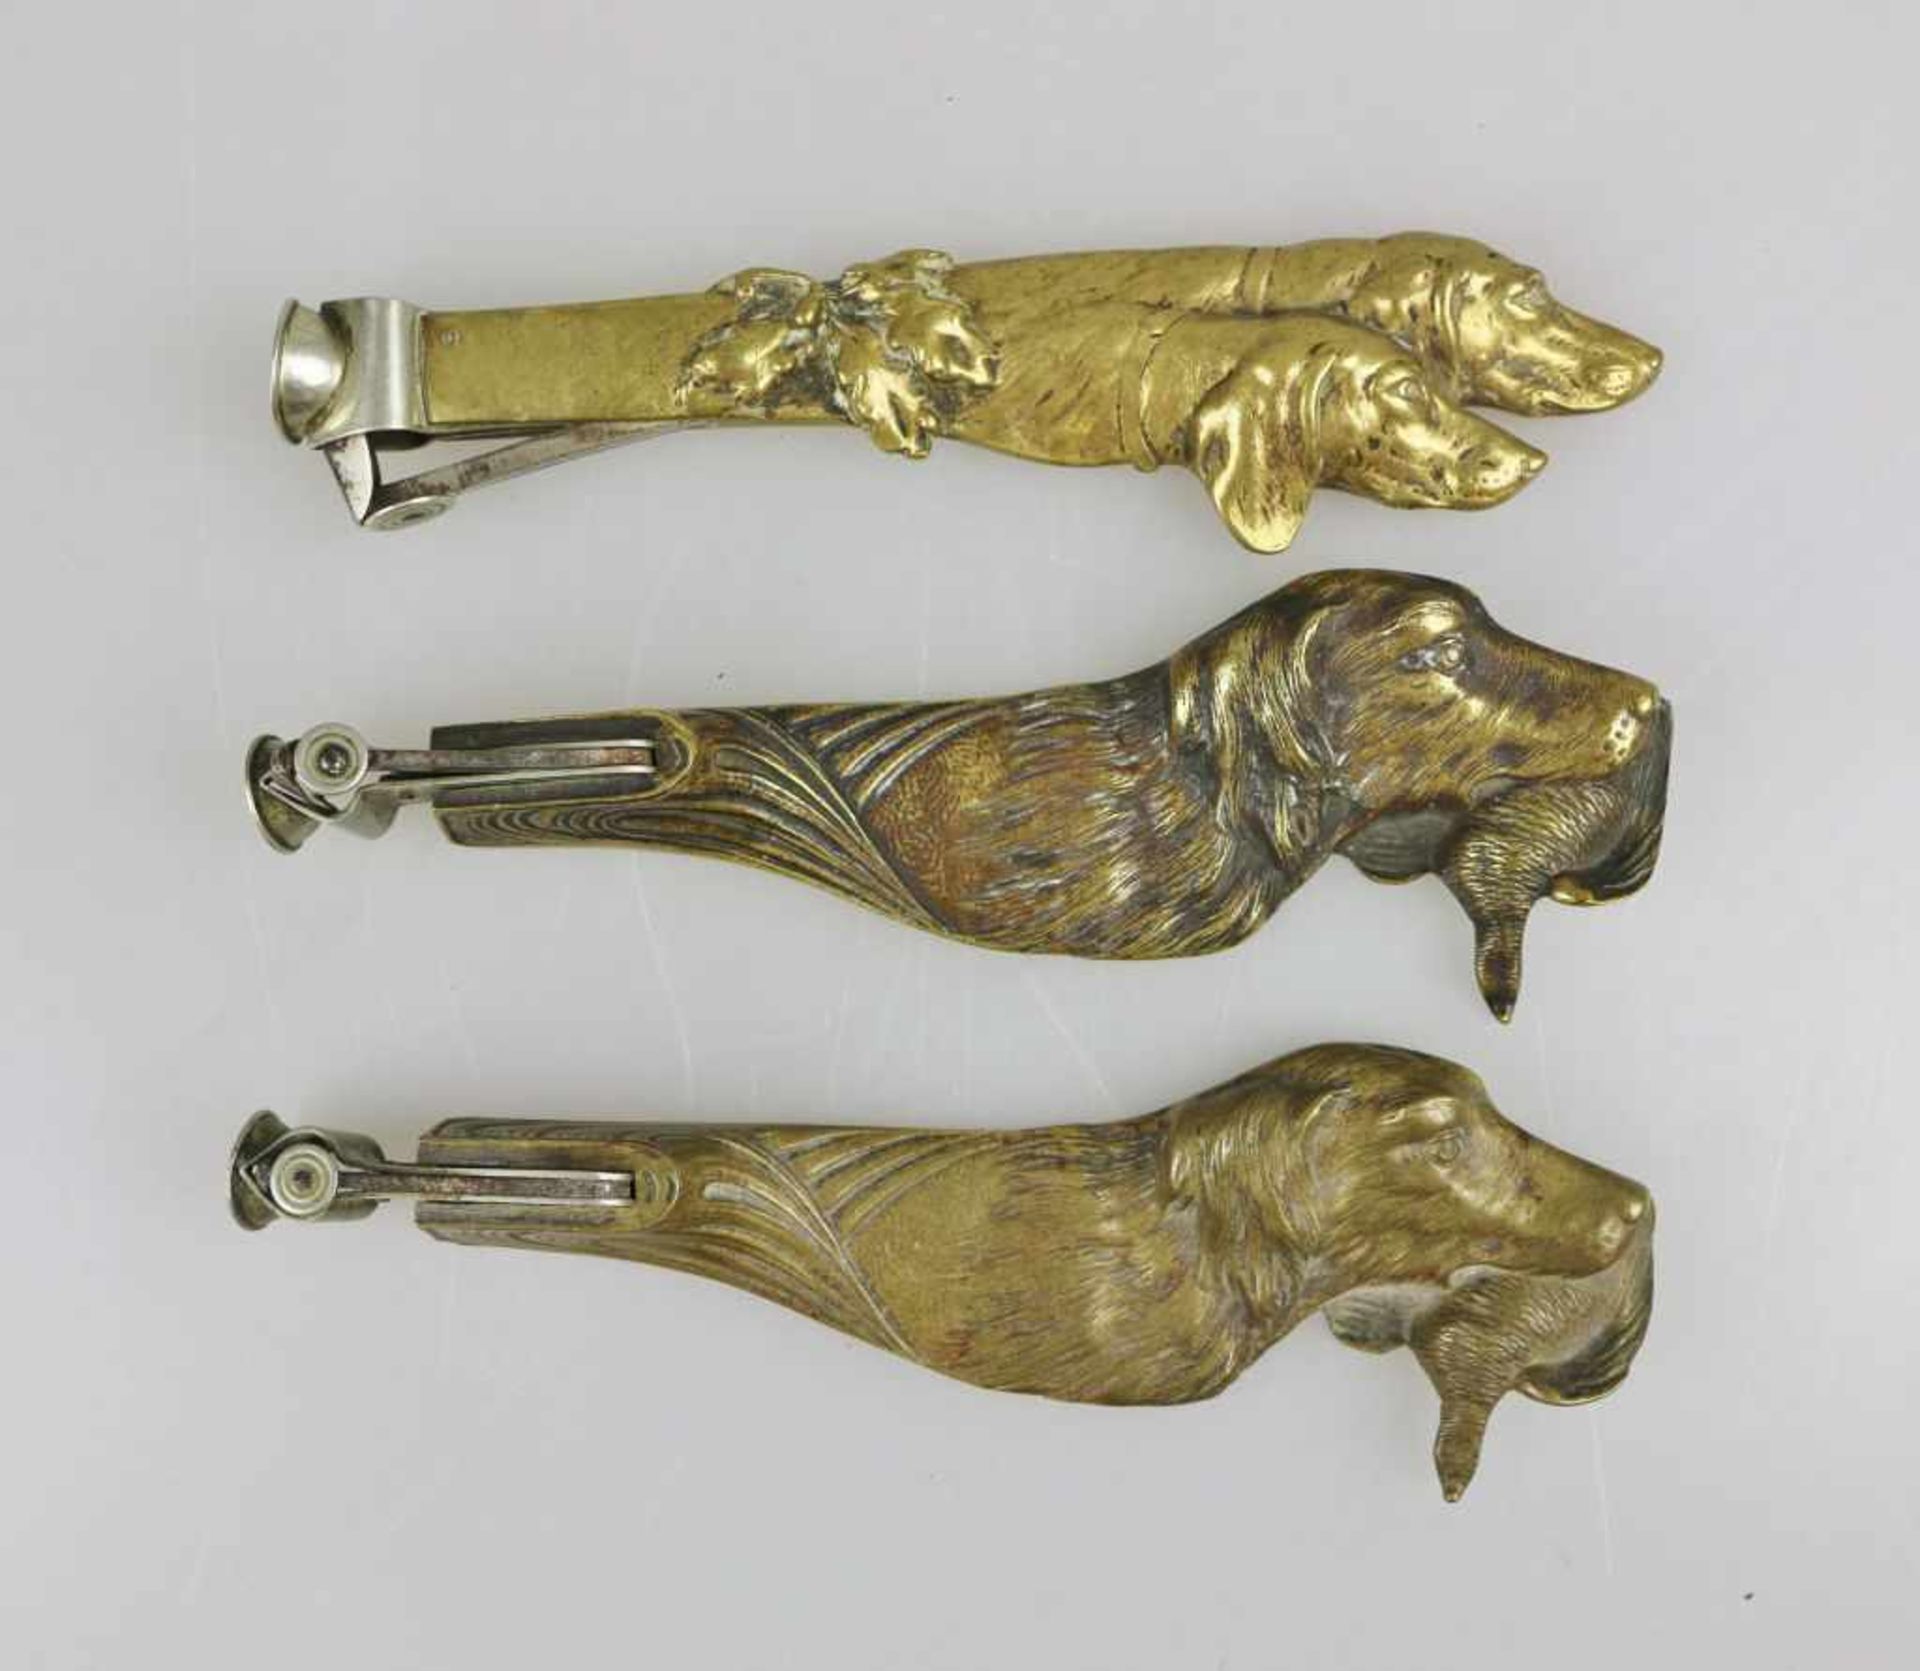 Drei Zigarrenabschneider, Bronzeguss, Griff in der Form eines Setterkopfes bzw. zwei Setterköpfe